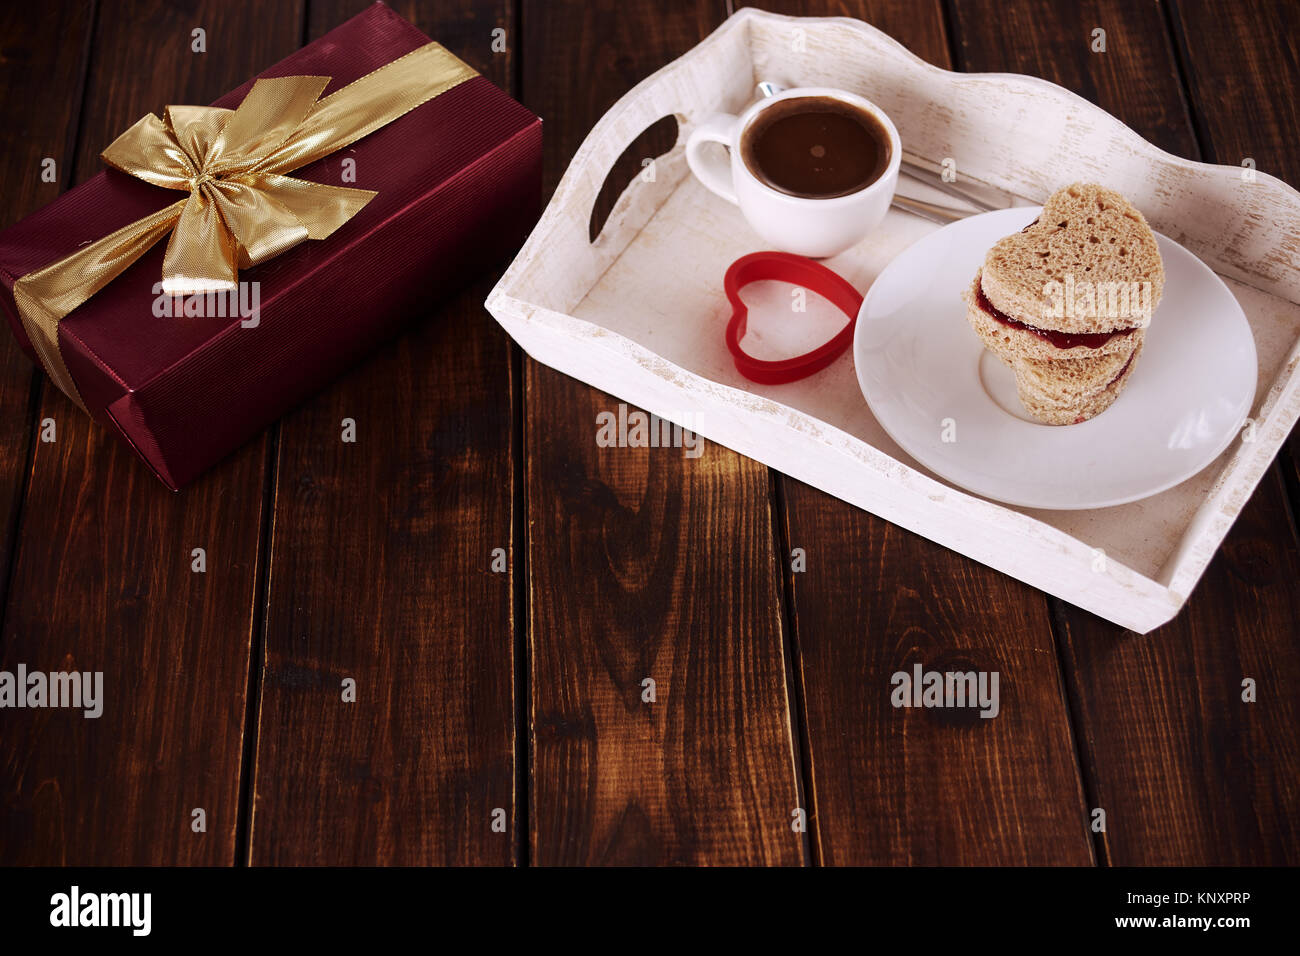 La prima colazione e la confezione regalo rossa per il giorno di San Valentino sul legno scuro tavolo. Copia dello spazio. Foto Stock